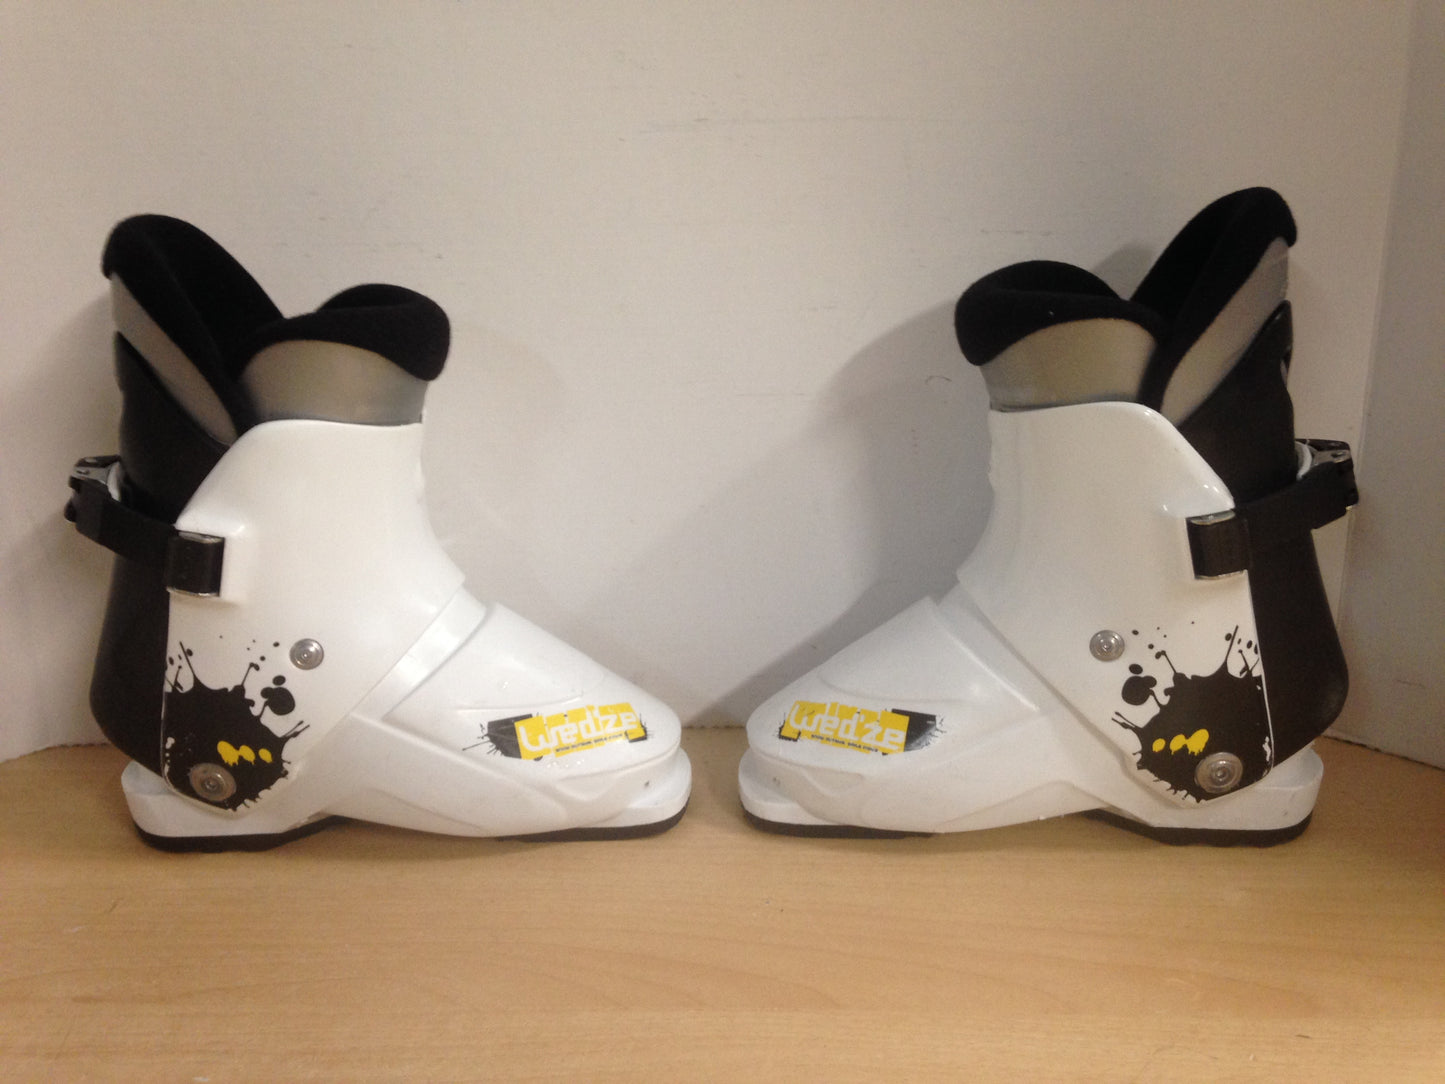 Ski Boots Mondo Size 20.0 Child Shoe Size 1 242 mm Wedzie Black White Yellow Excellent